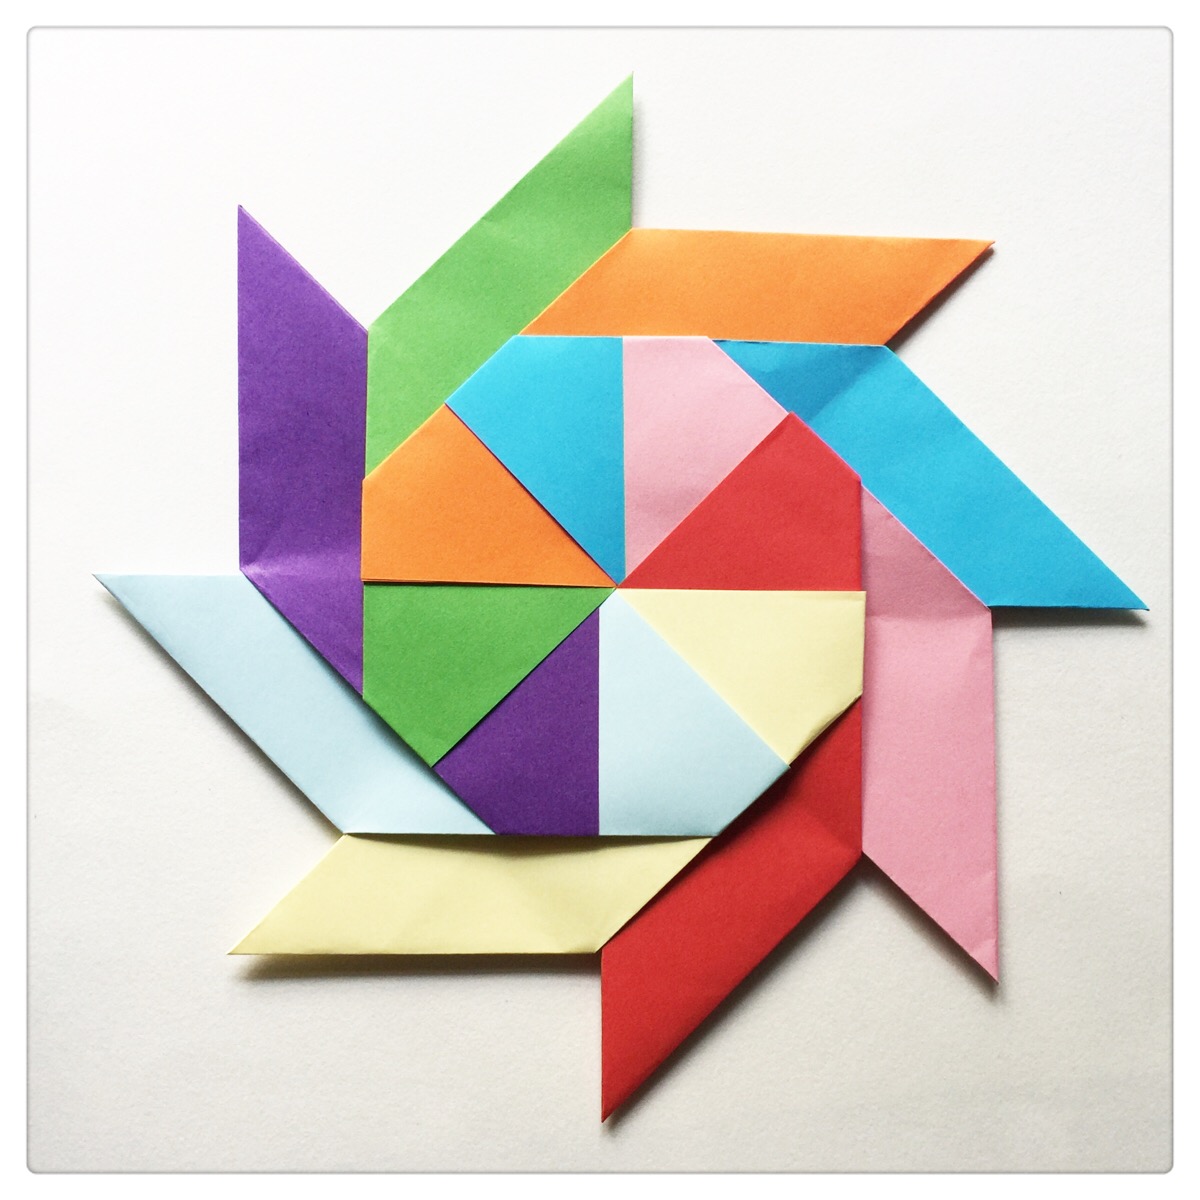 正方形折纸折飞镖图片